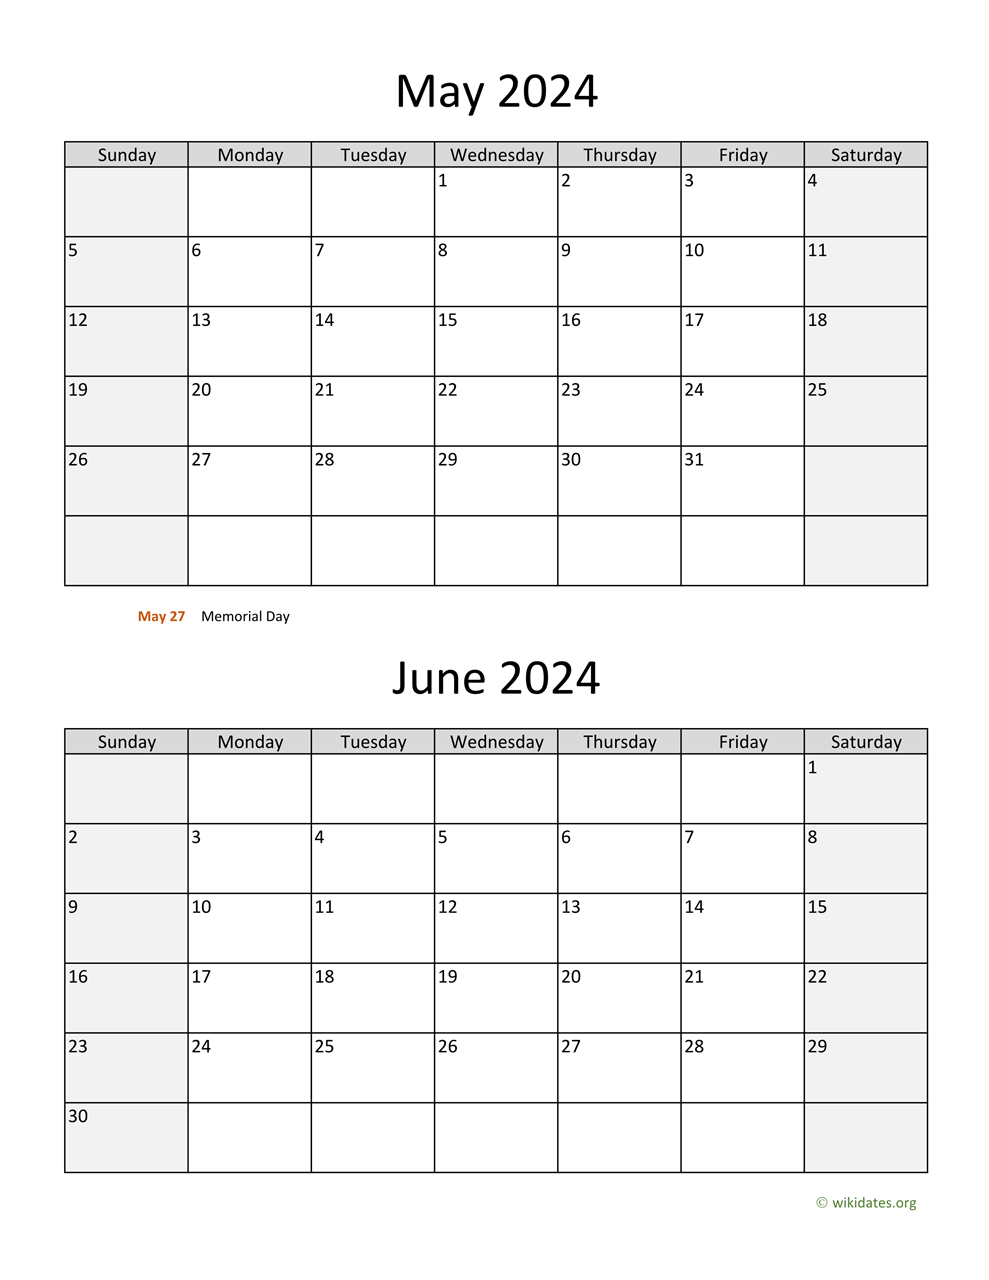 May And June 2024 Calendar | Wikidates for Printable May June Calendar 2024